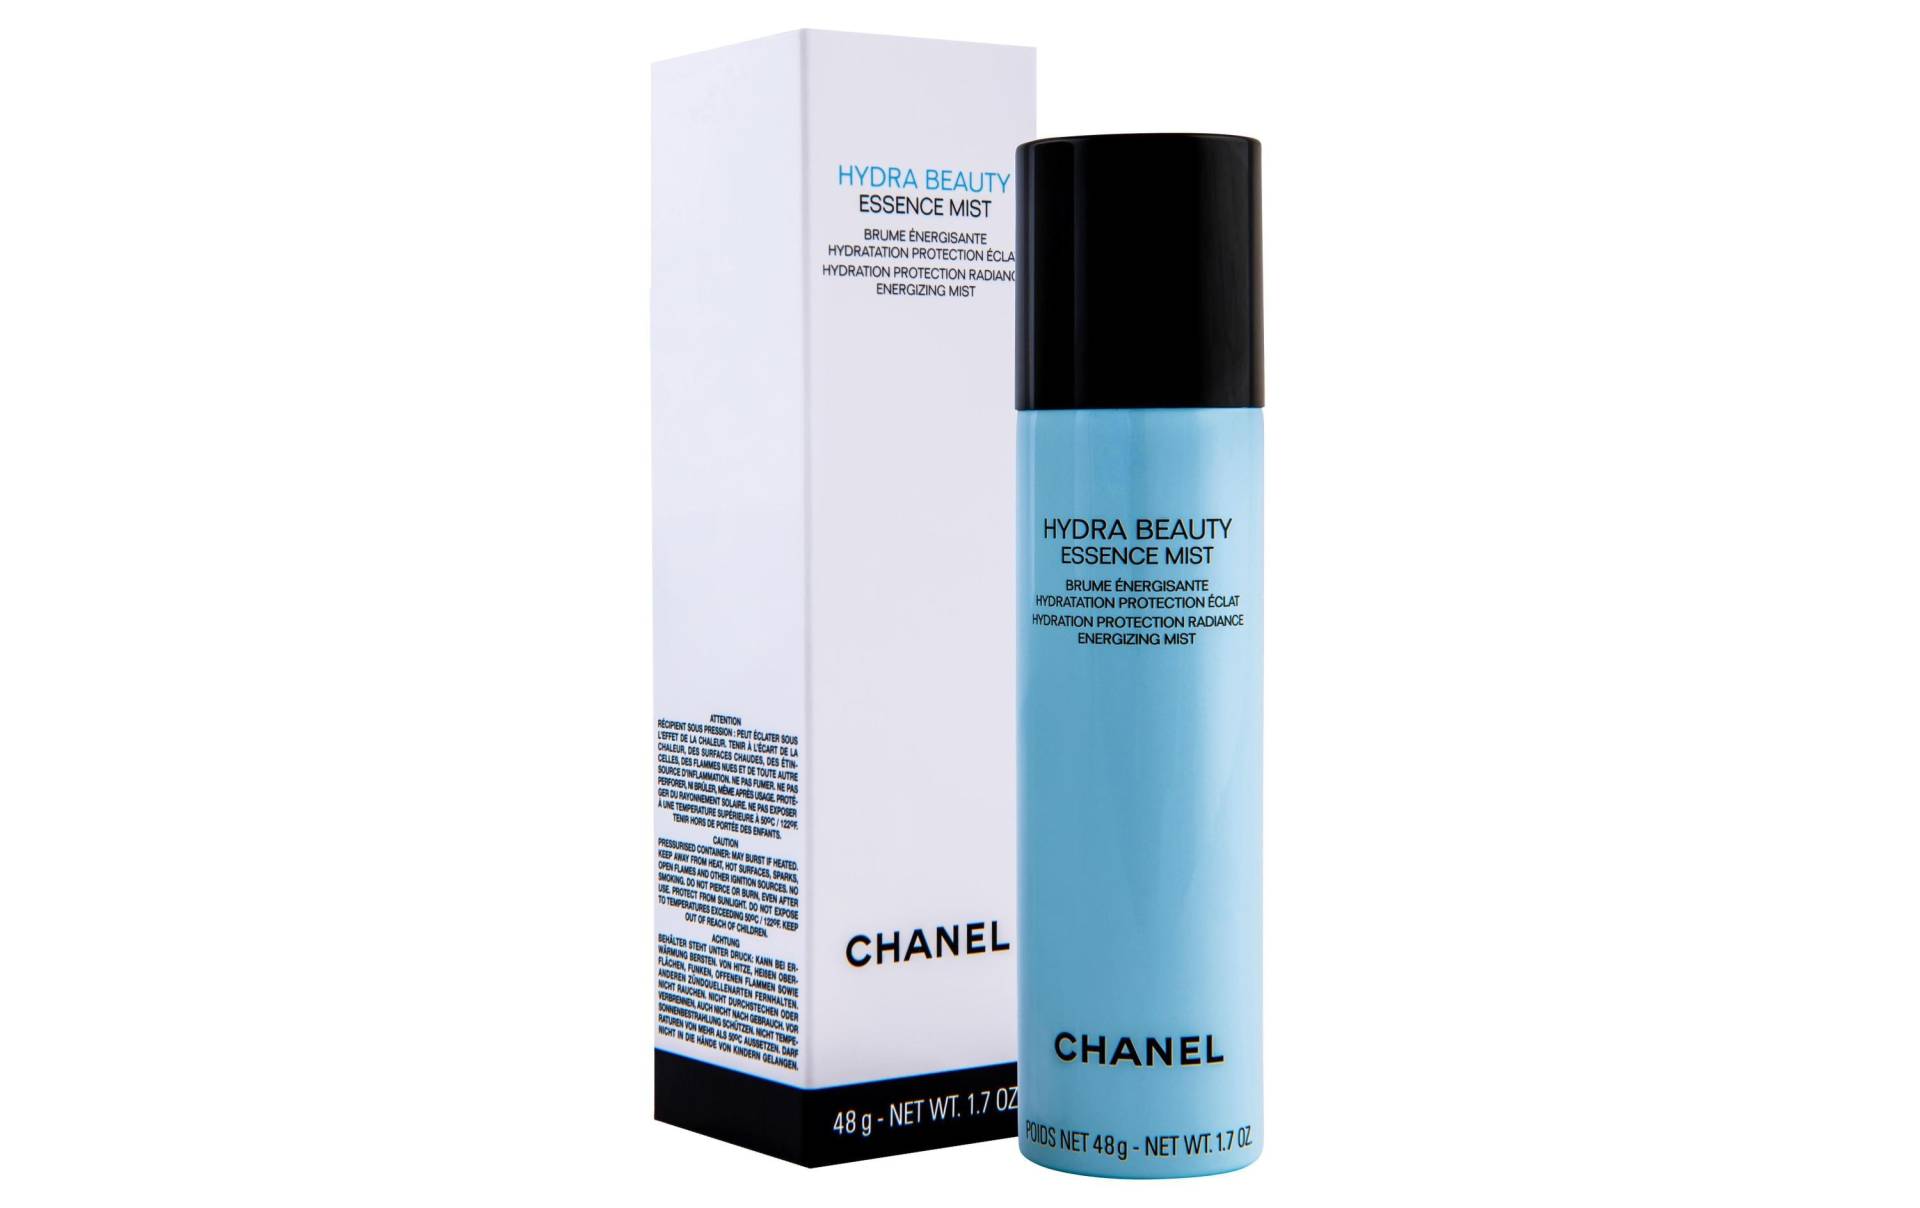 CHANEL Gesichtspflege »Chanel Gesichtspflege Spray Hydra Beauty Essence Mist 48 g« von Chanel